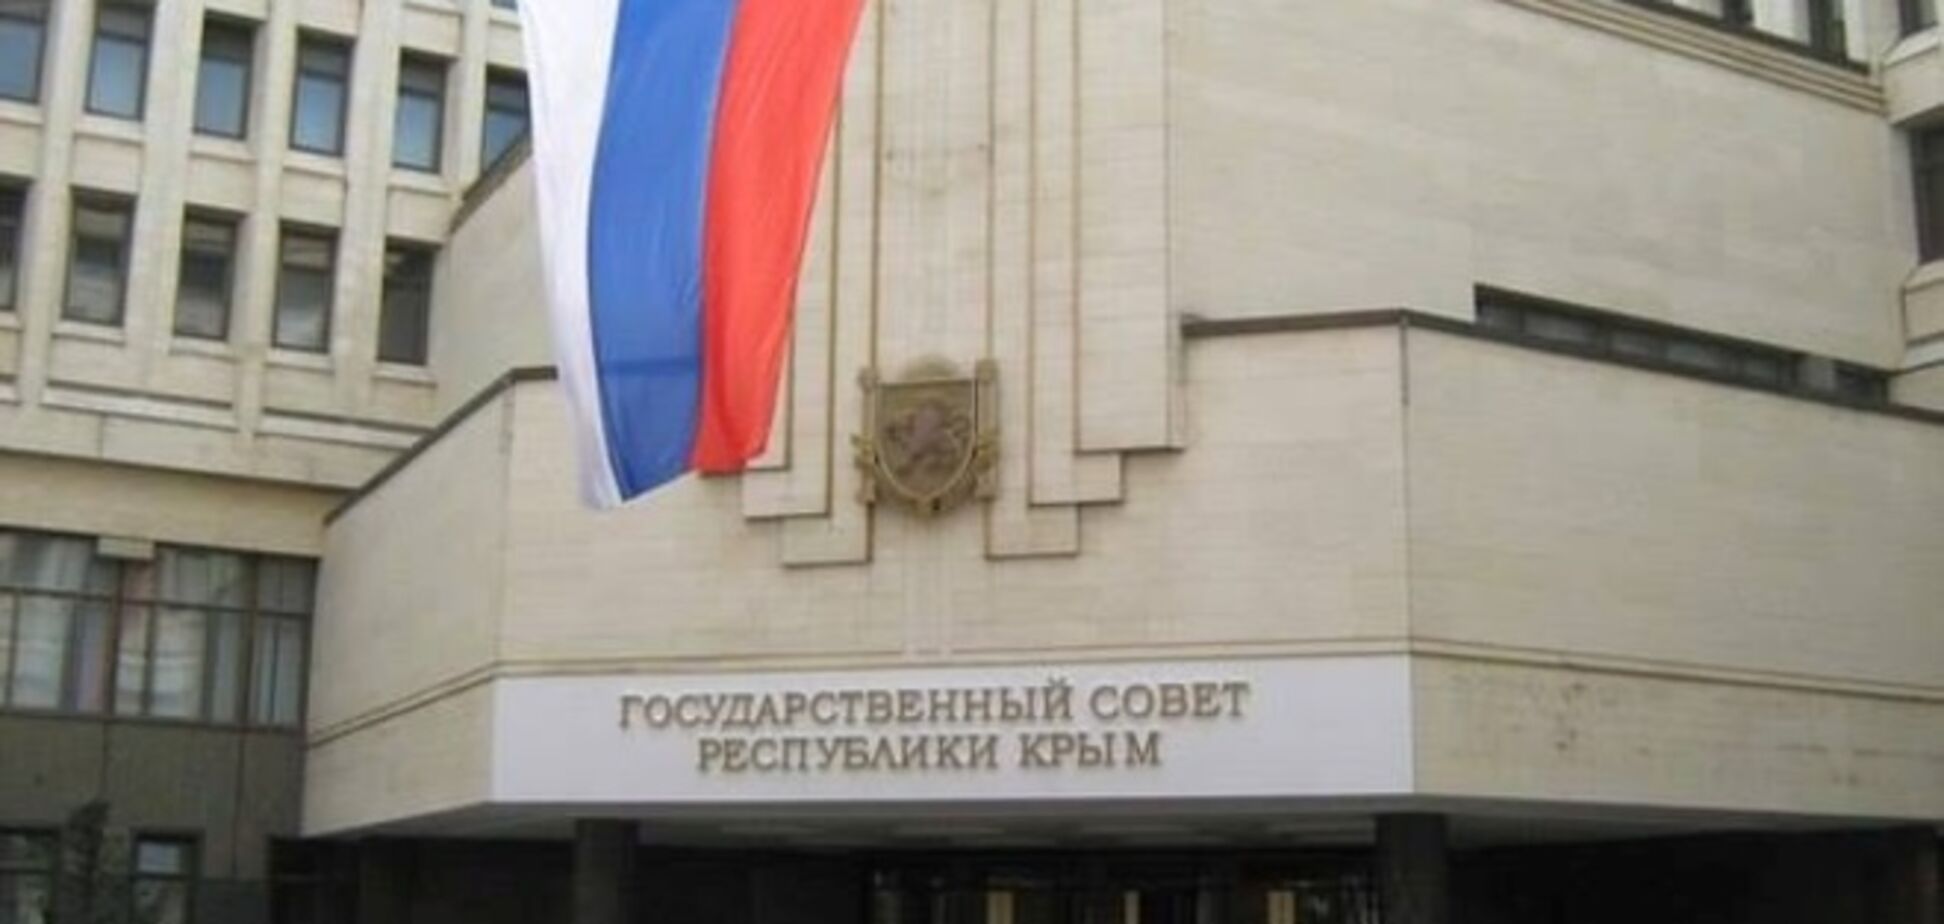 'Госсовет' хочет сделать день 'референдума' в Крыму праздником